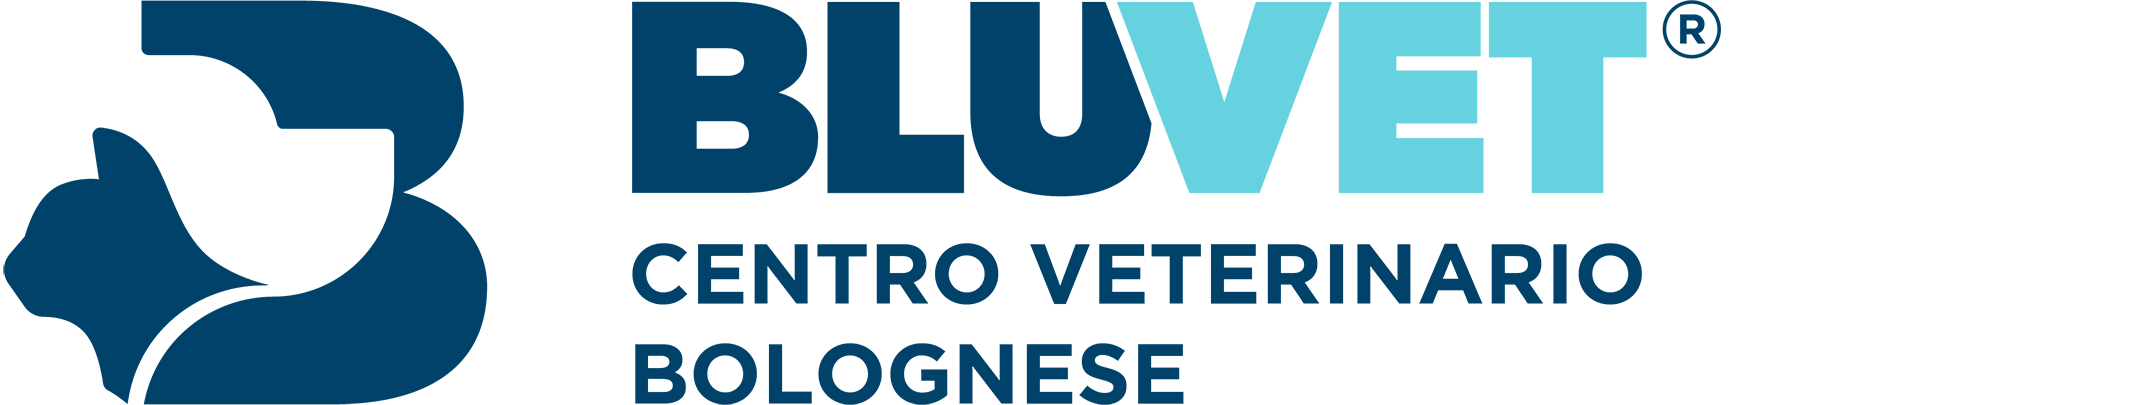 Centro veterinario bolognese logo